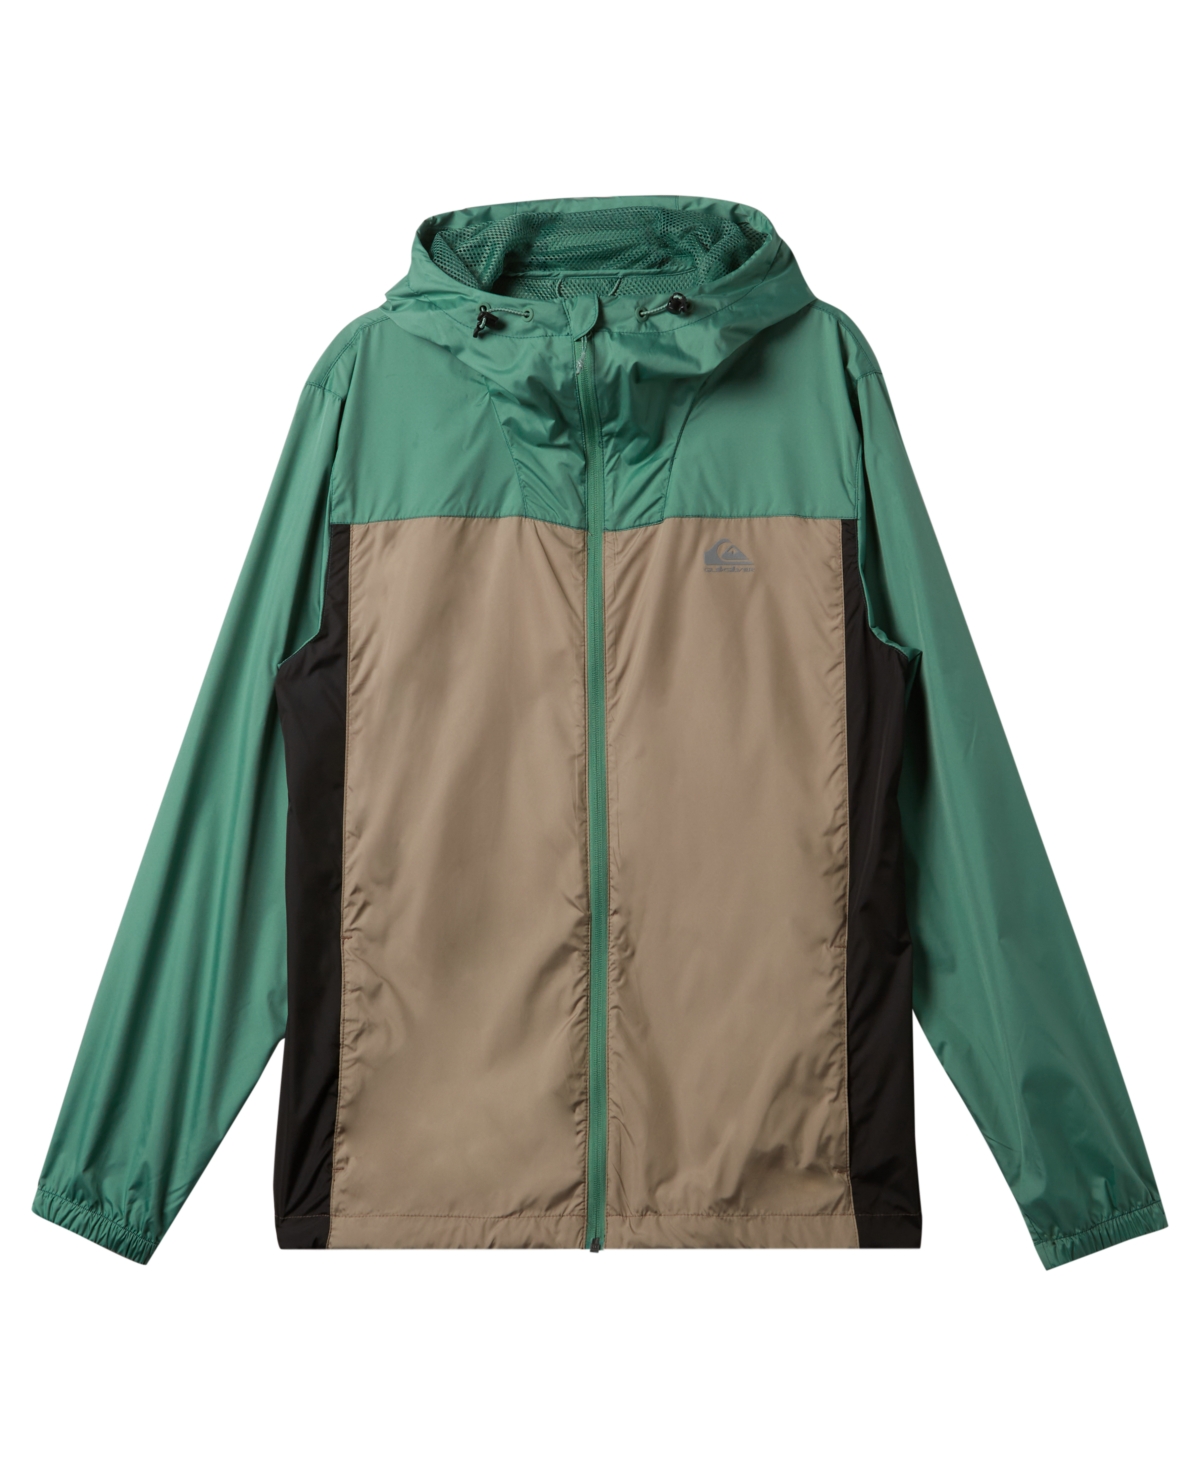 Men's Overcast Windbreaker Long Sleeve Jacket - Frosty Spruce